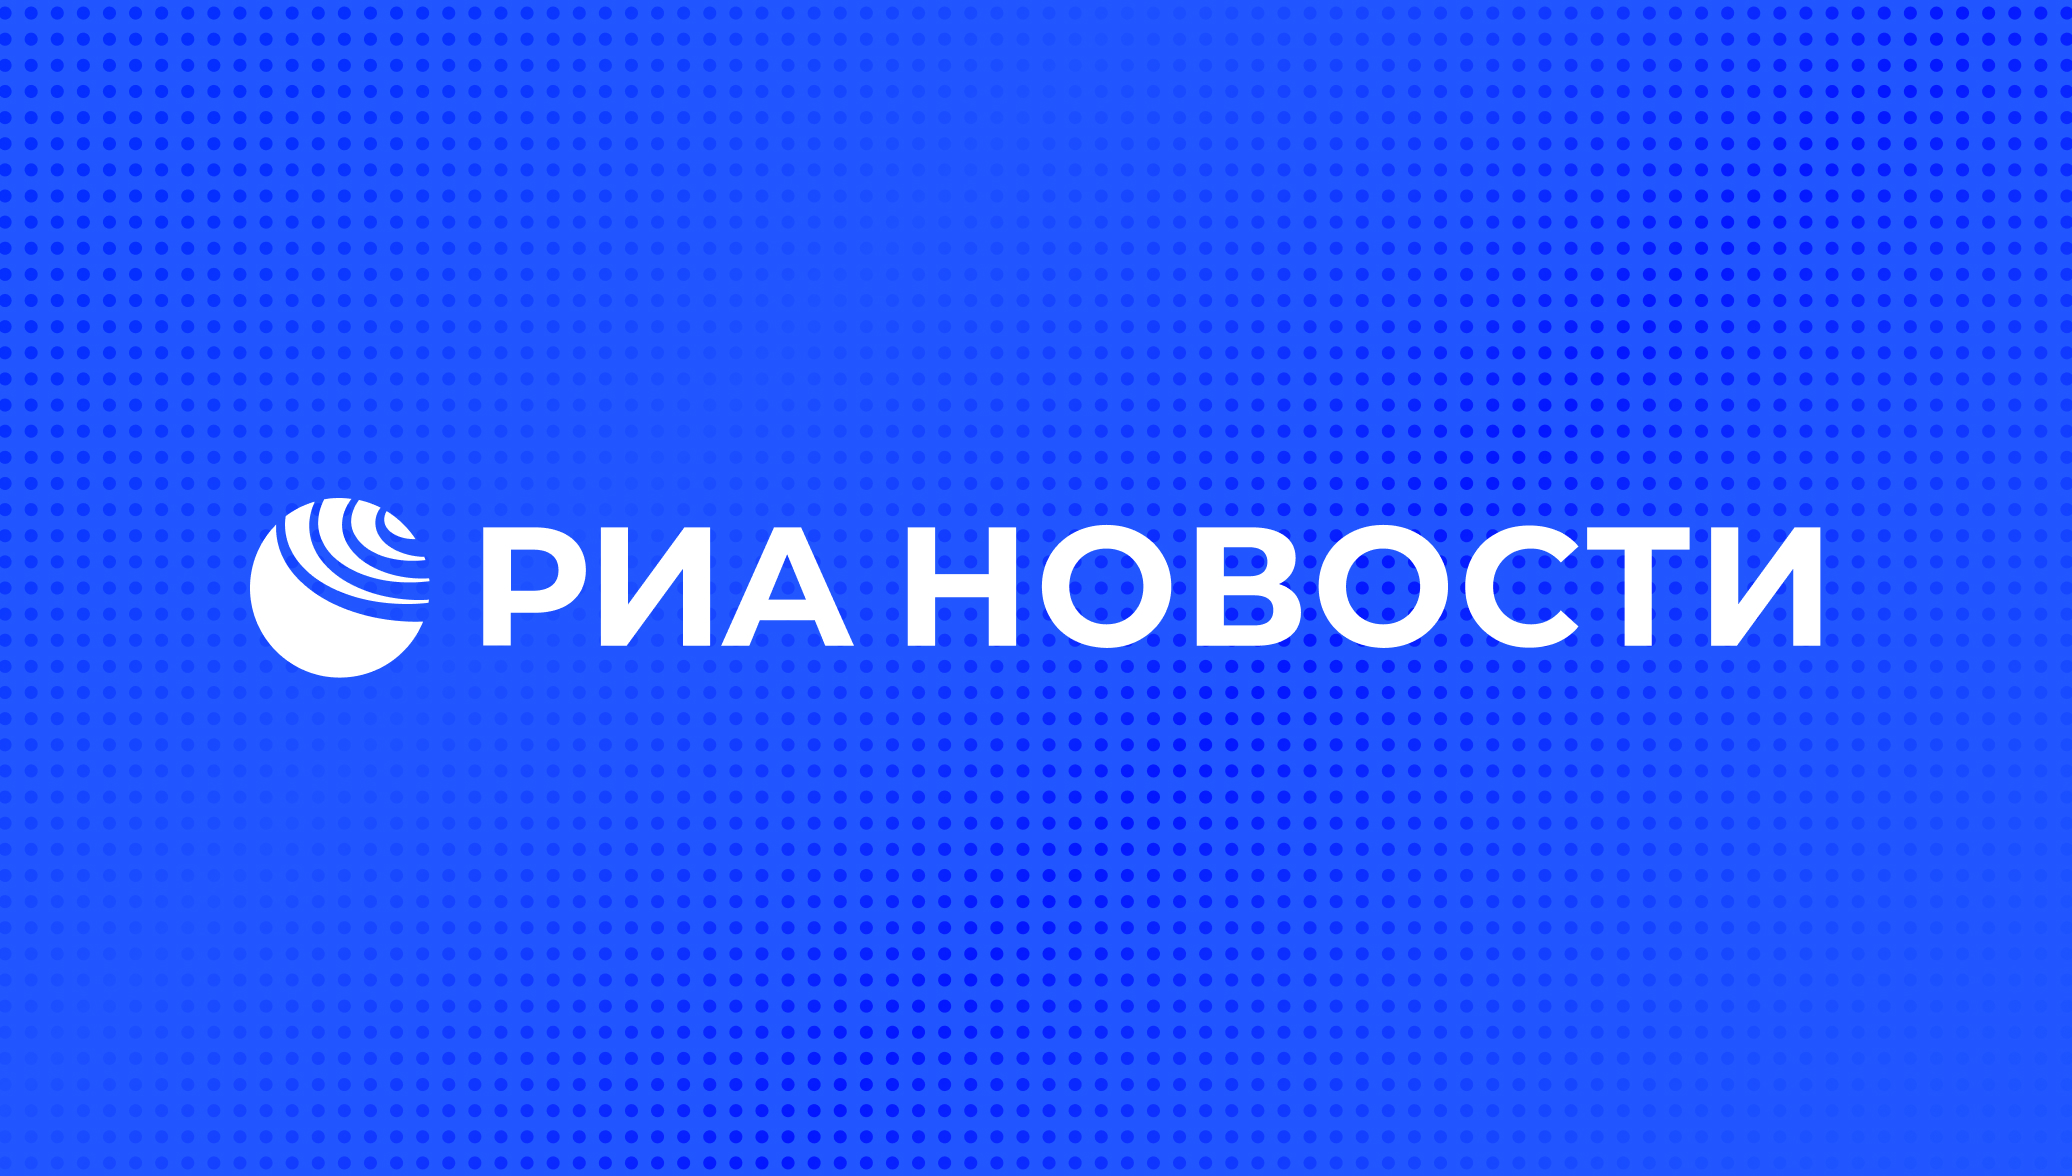 РИА Новости - события в Москве, России и мире сегодня: темы дня, фото, видео, инфографика, радио